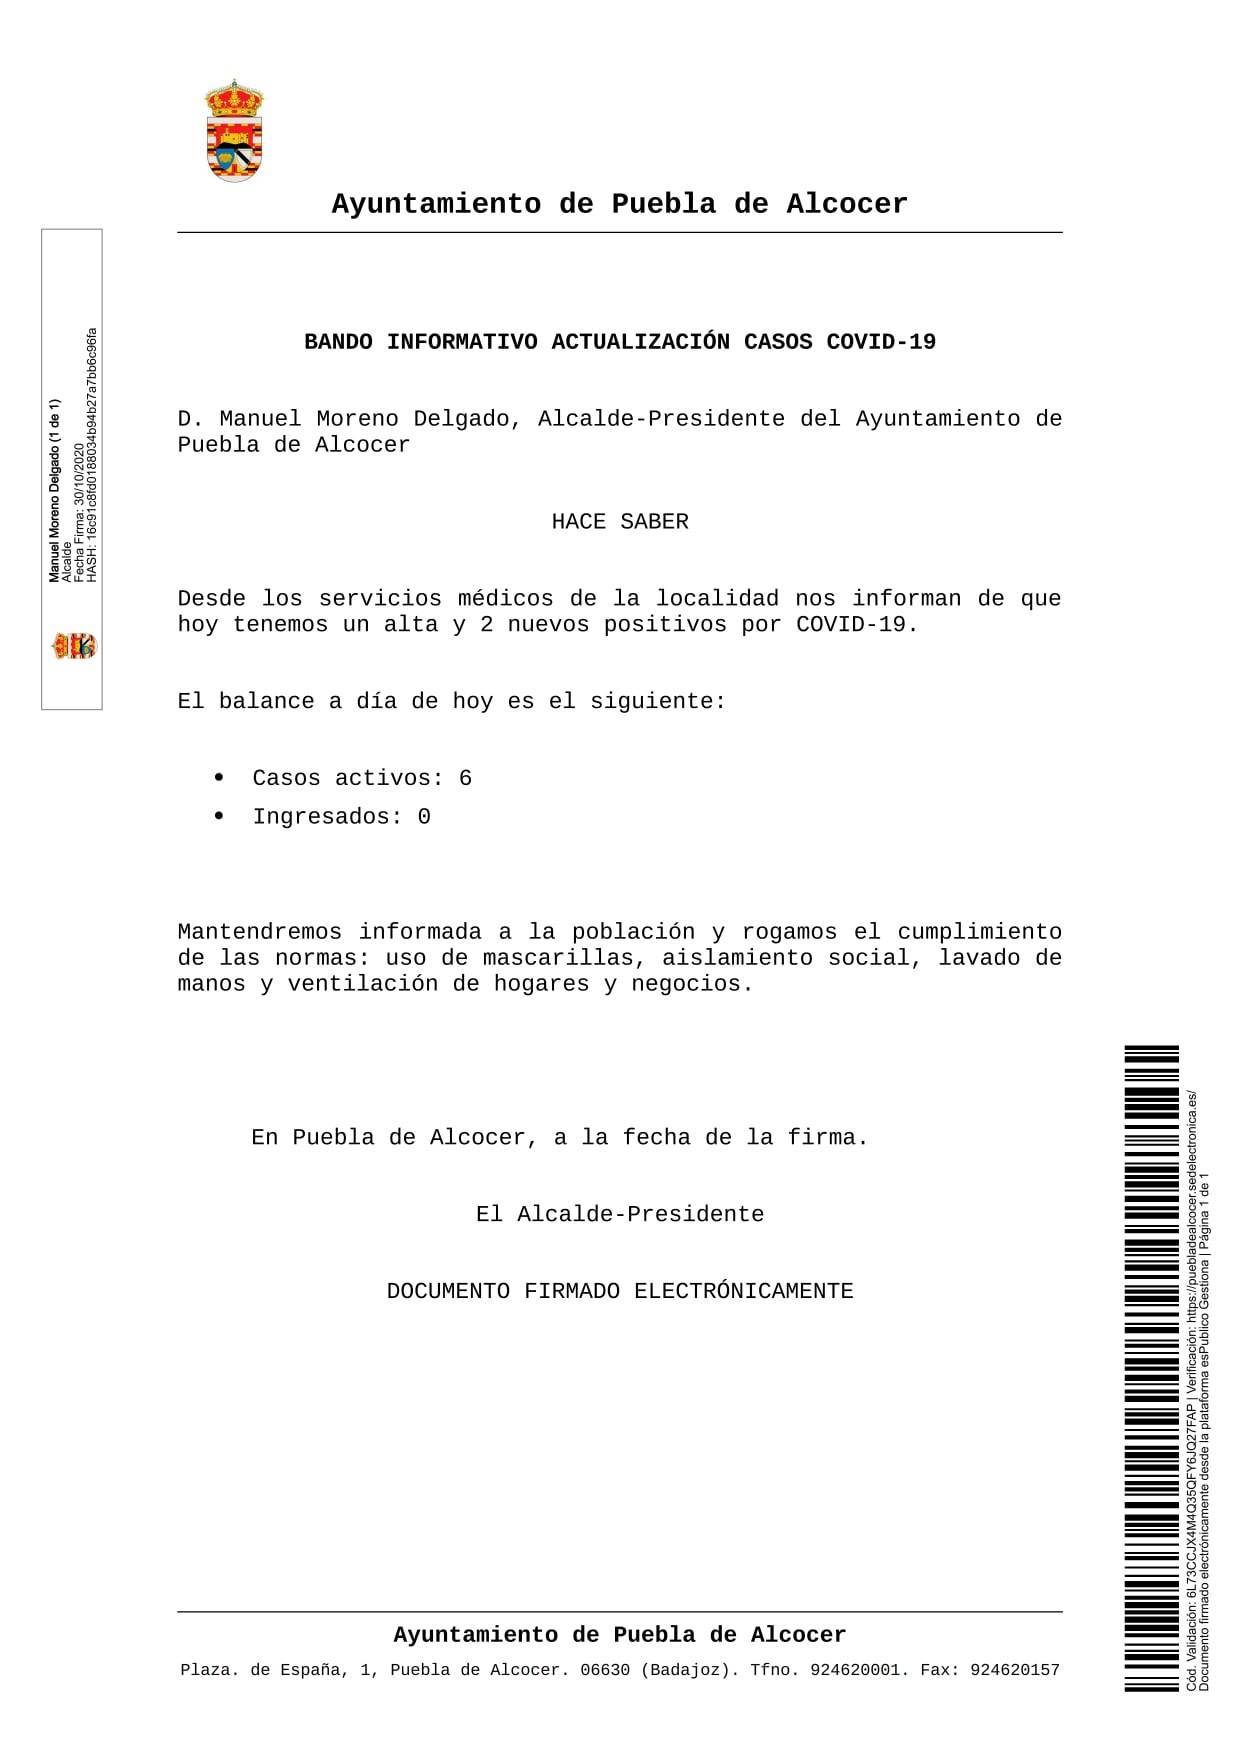 6 casos activos de COVID-19 (octubre 2020) - Puebla de Alcocer (Badajoz)